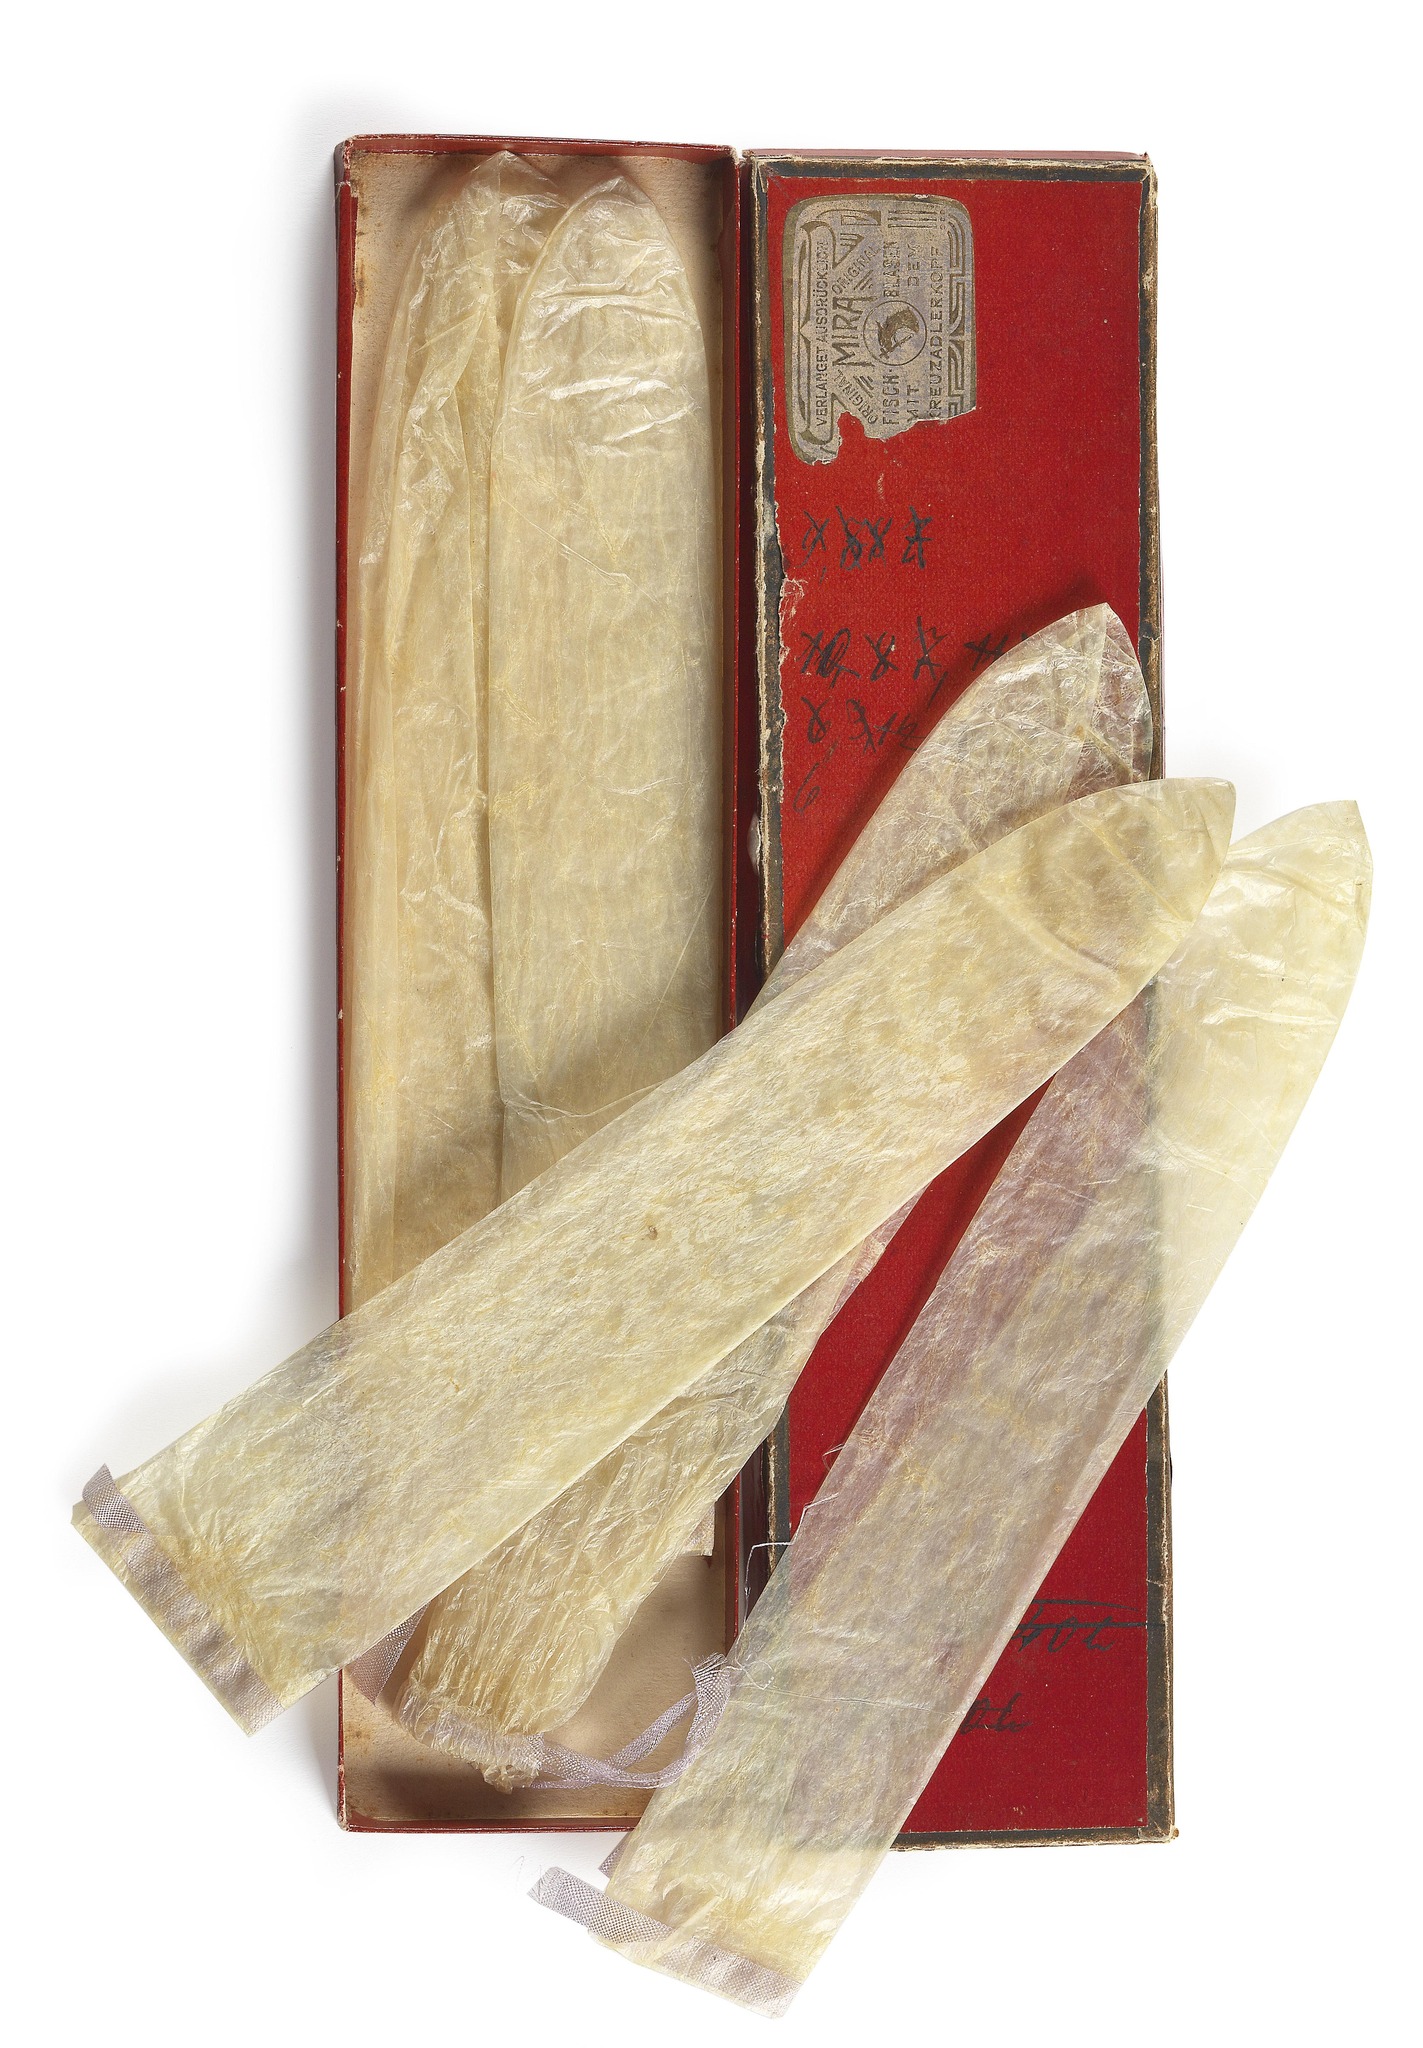 En 1900, ces 5 préservatifs confectionnés en vessies natatoires de poisson étaient réutilisables, en témoignent les marques effectuées par leur propriétaire sur la boite. Le tout a été vendu à une vente aux enchères à Vienne en 2010 pour minimum 300 euros